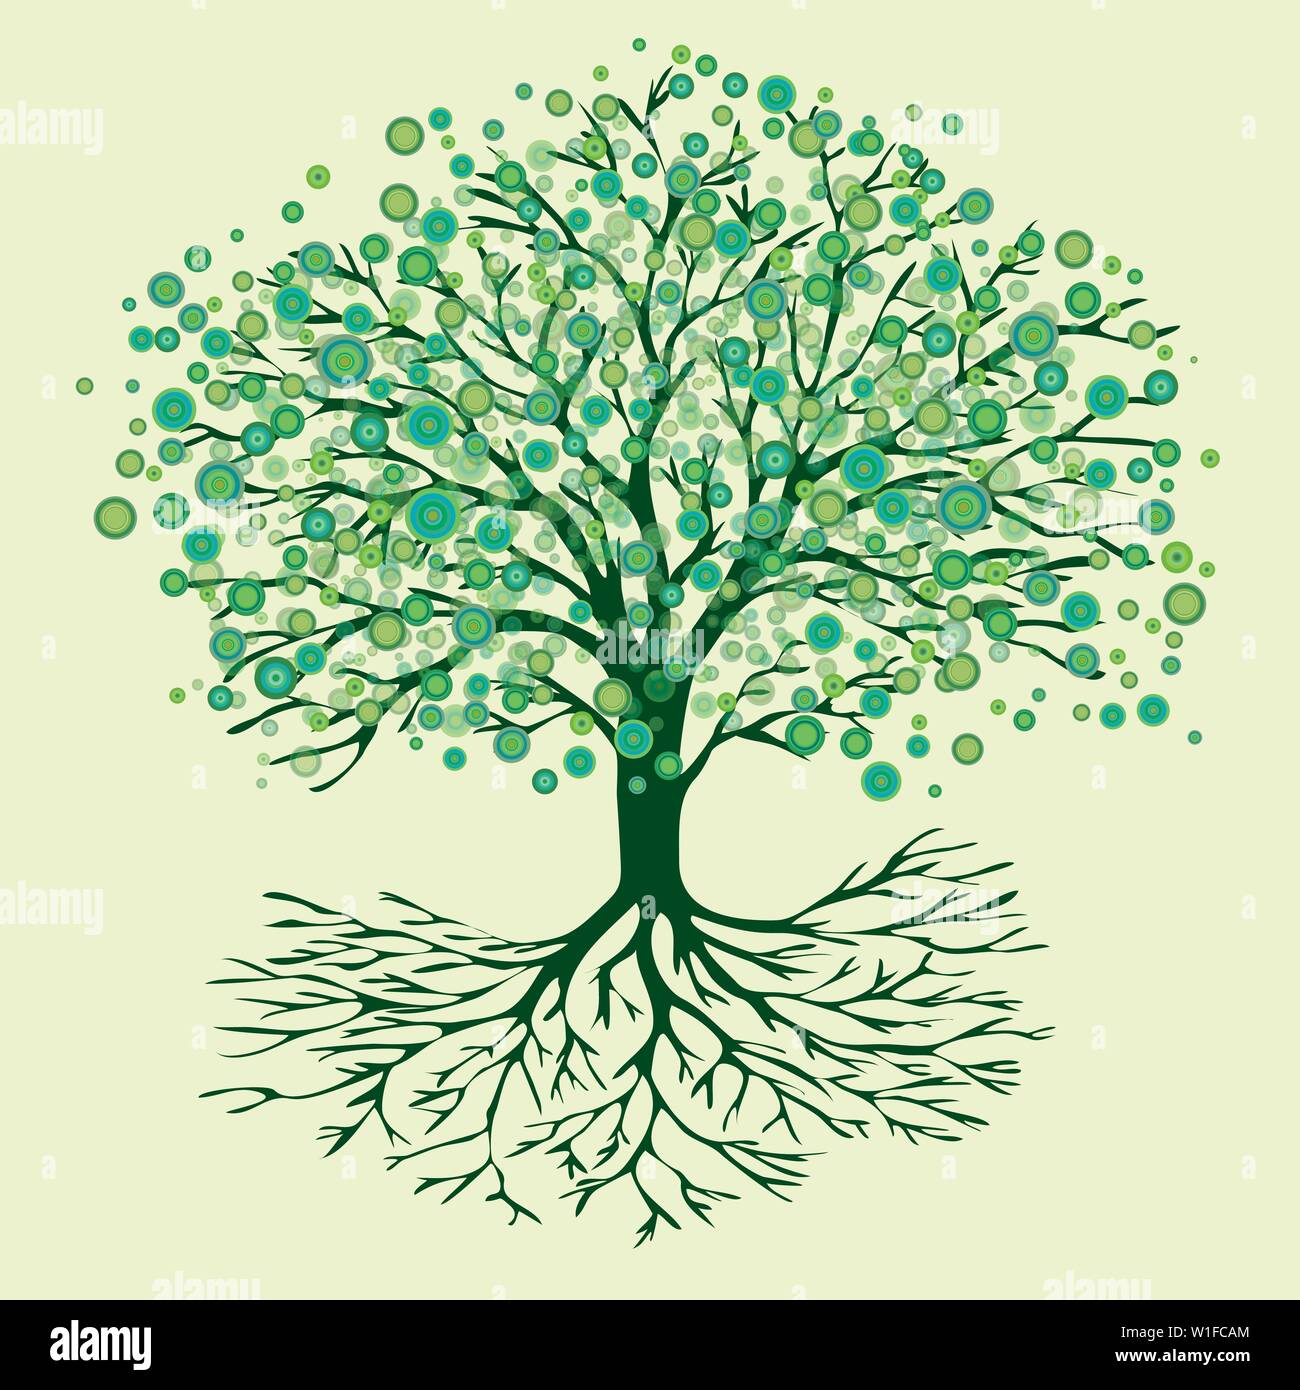 Una illustrazione vettoriale di un albero della vita con abstract round fiori verdi Illustrazione Vettoriale